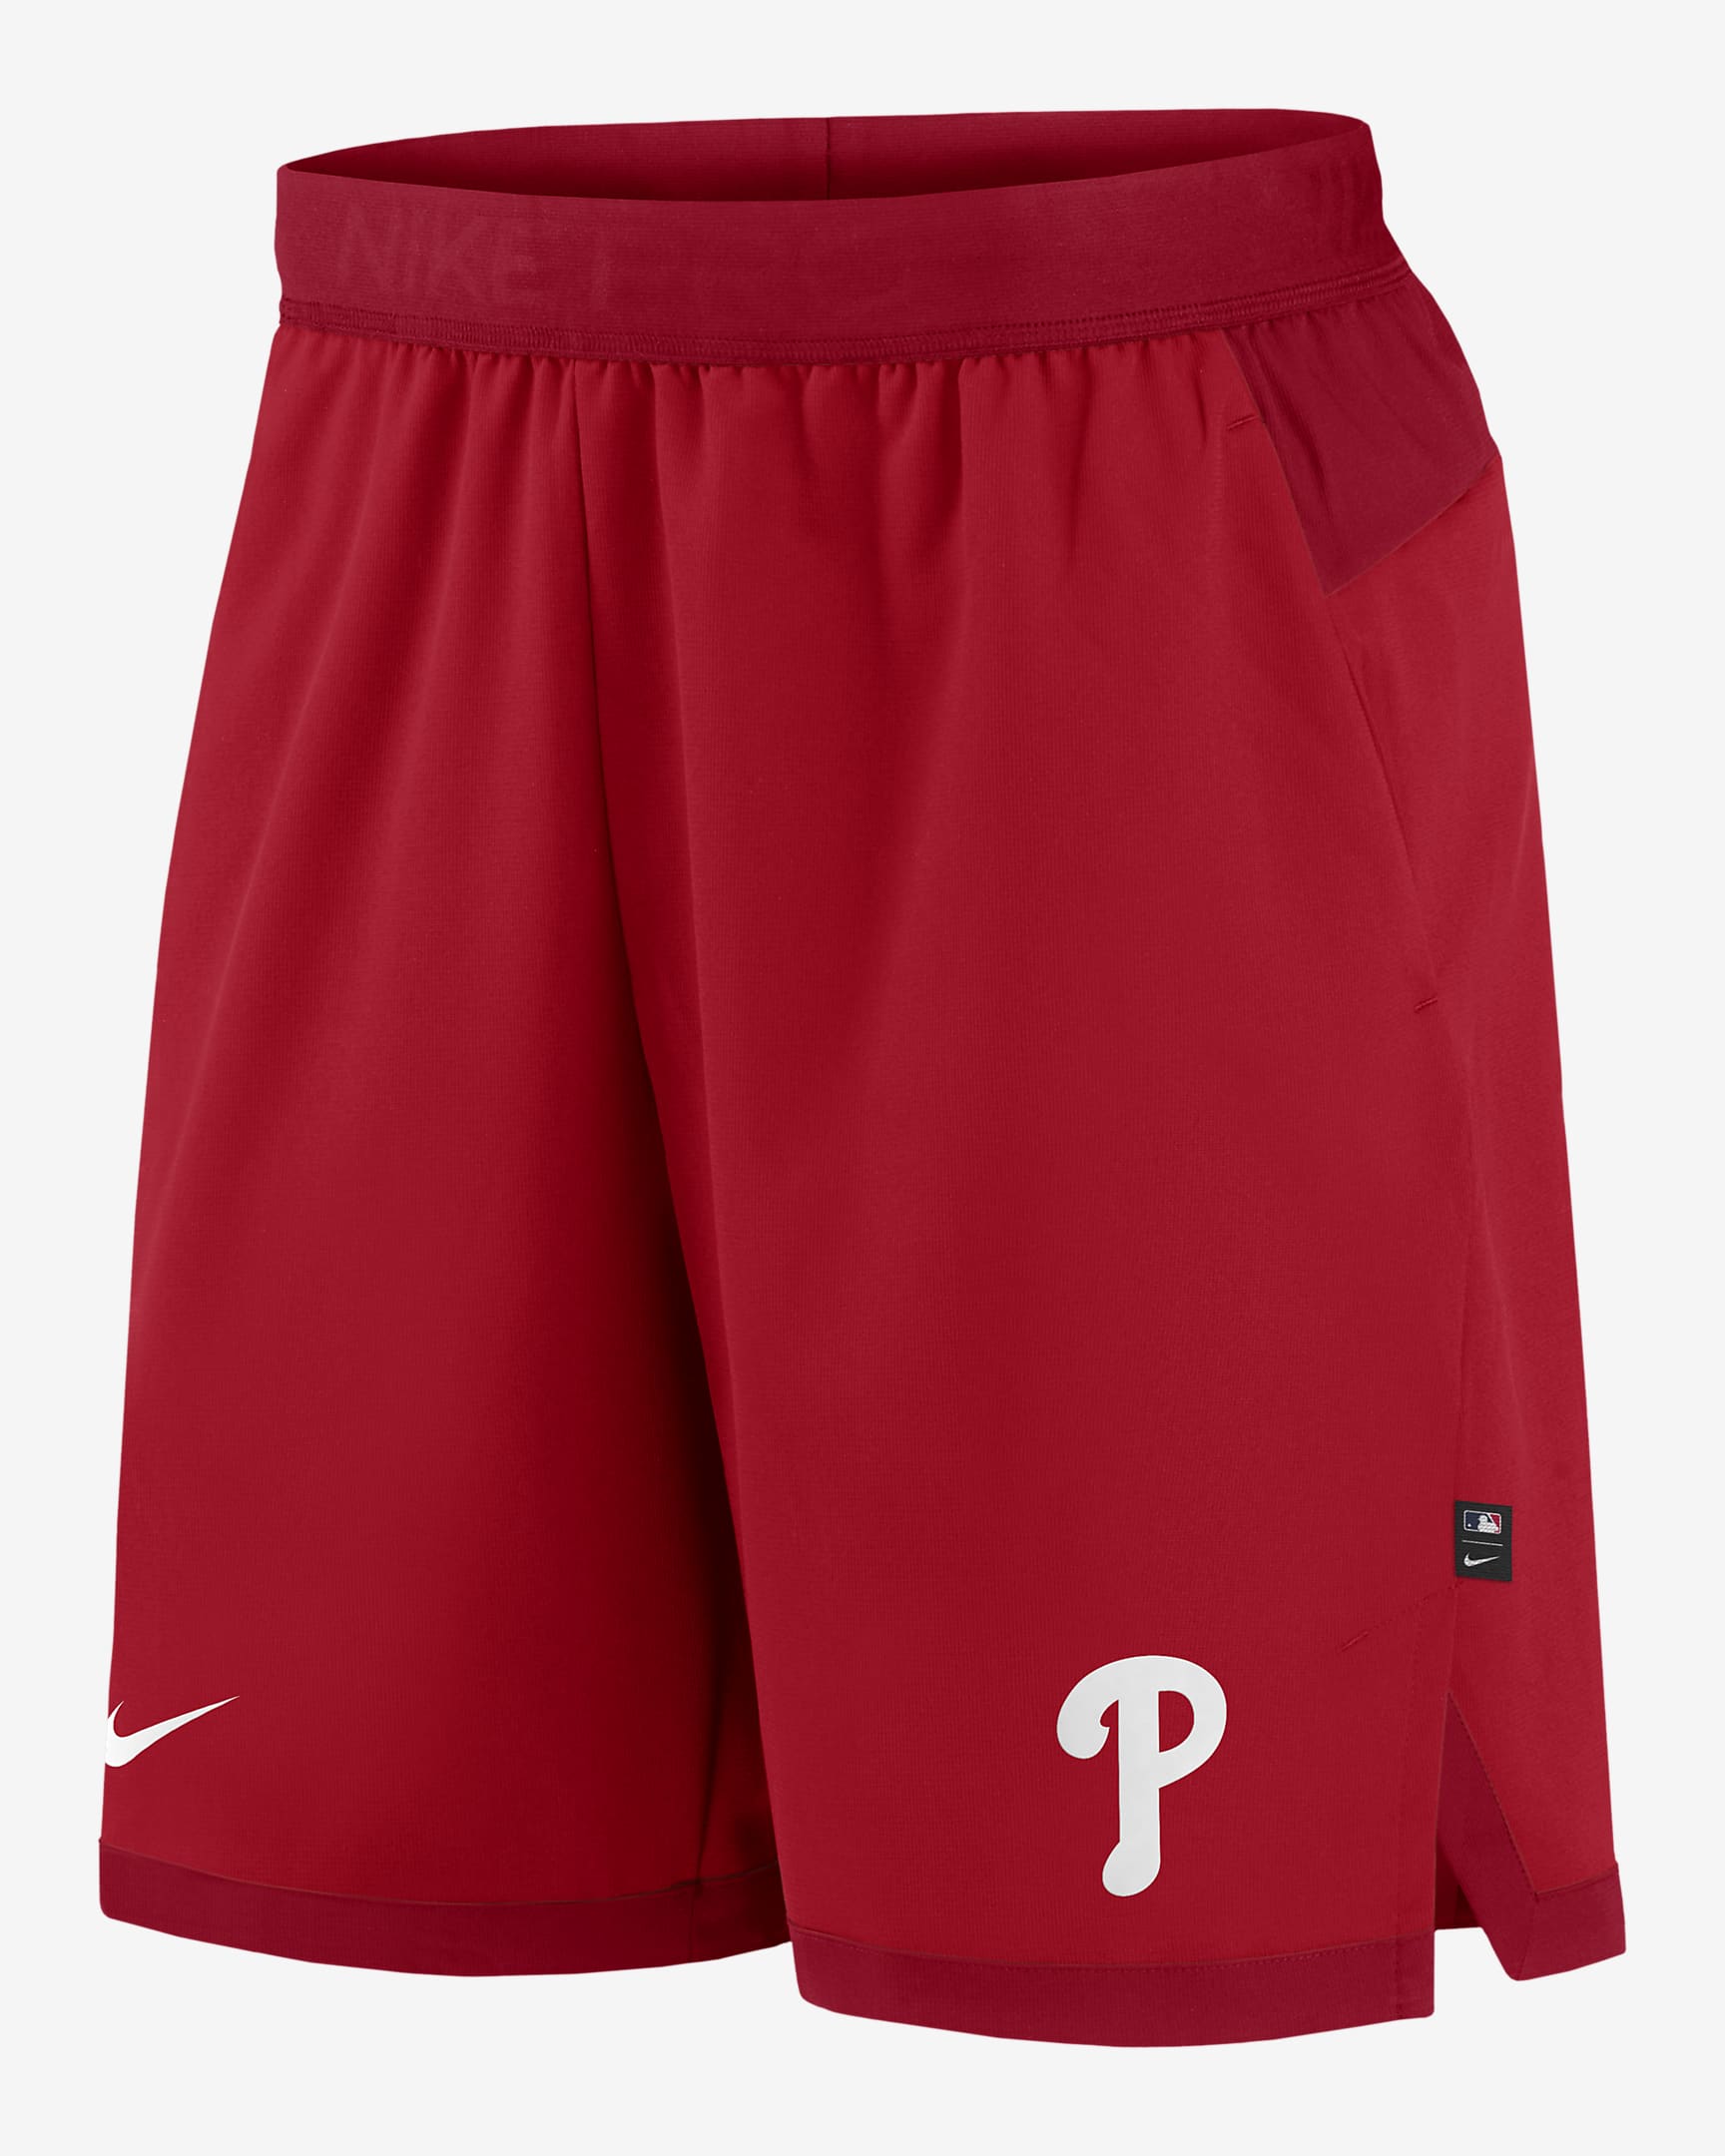 Nike Dri-FIT Flex (MLB Philadelphia Phillies) Men's Shorts. Nike.com